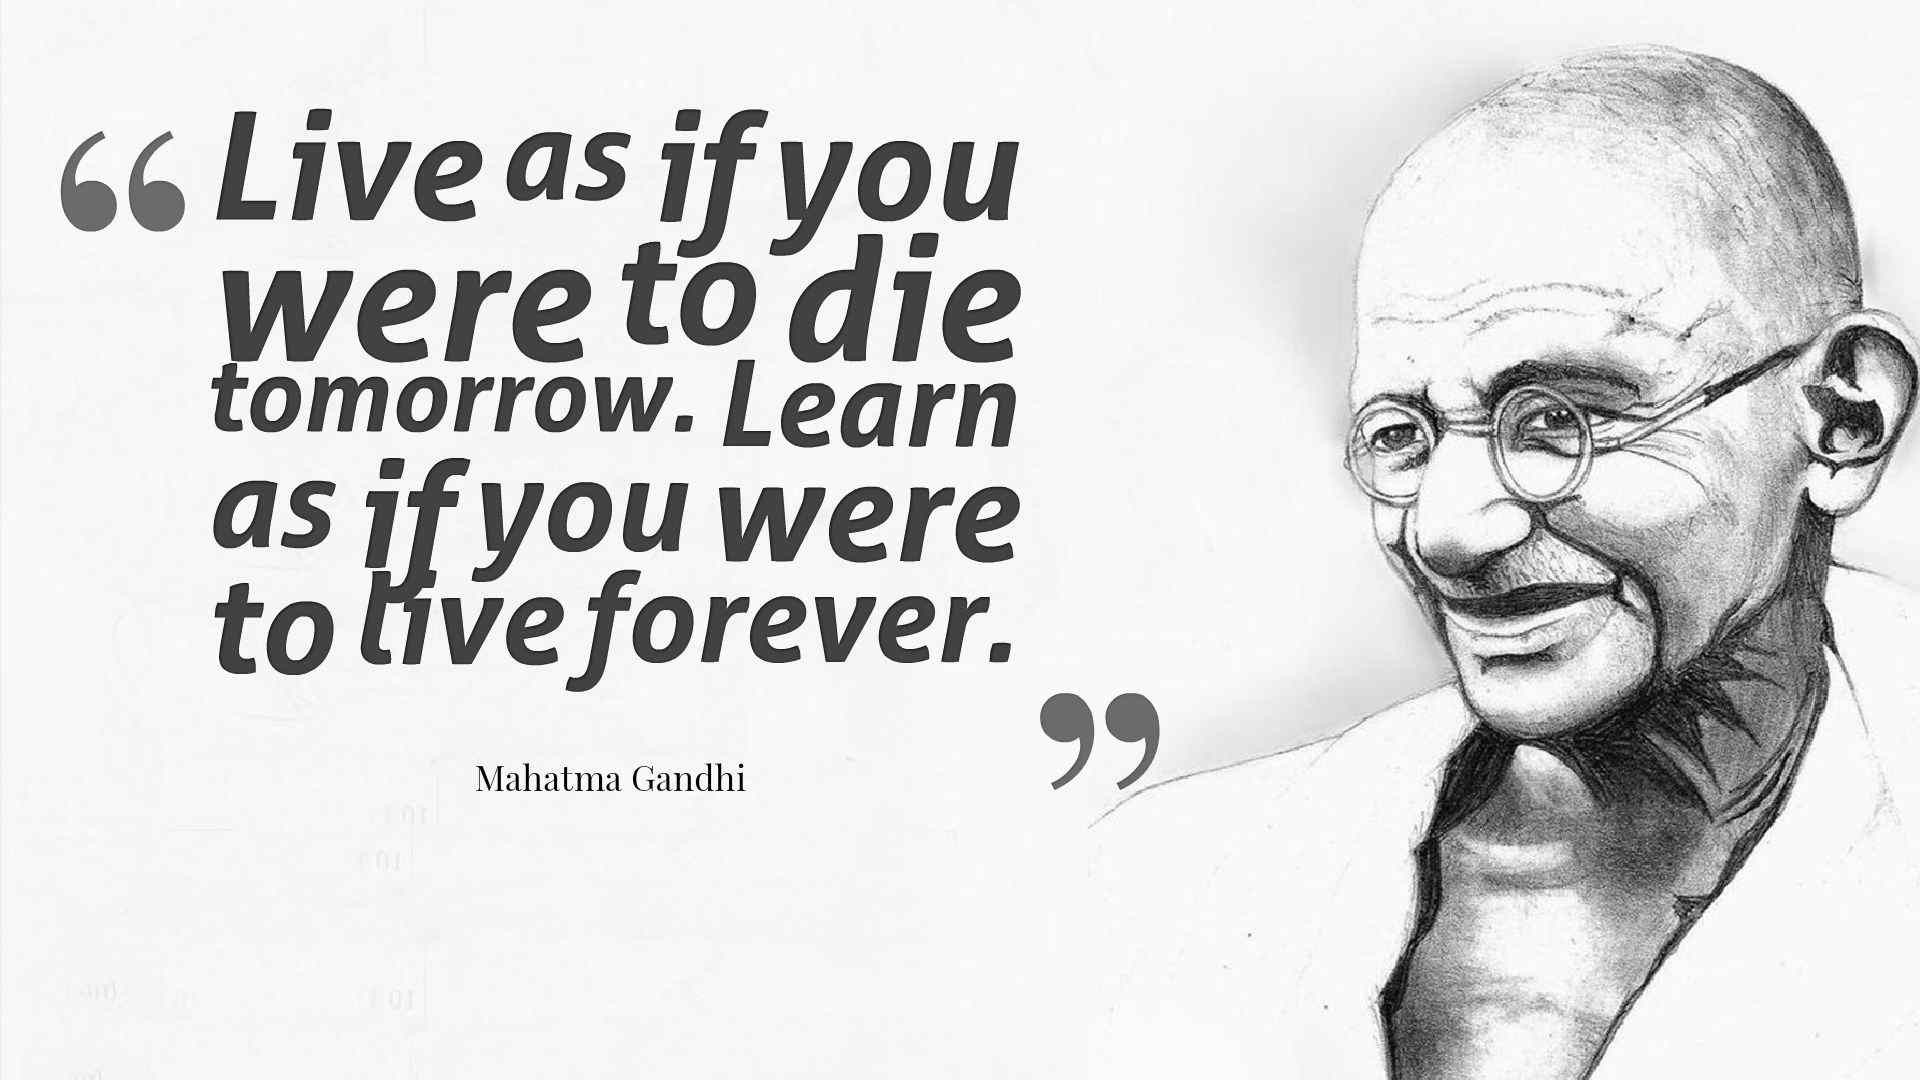 Gandhi Quotes On Education
 Mahatma Gandhi Quotes In Spanish QuotesGram